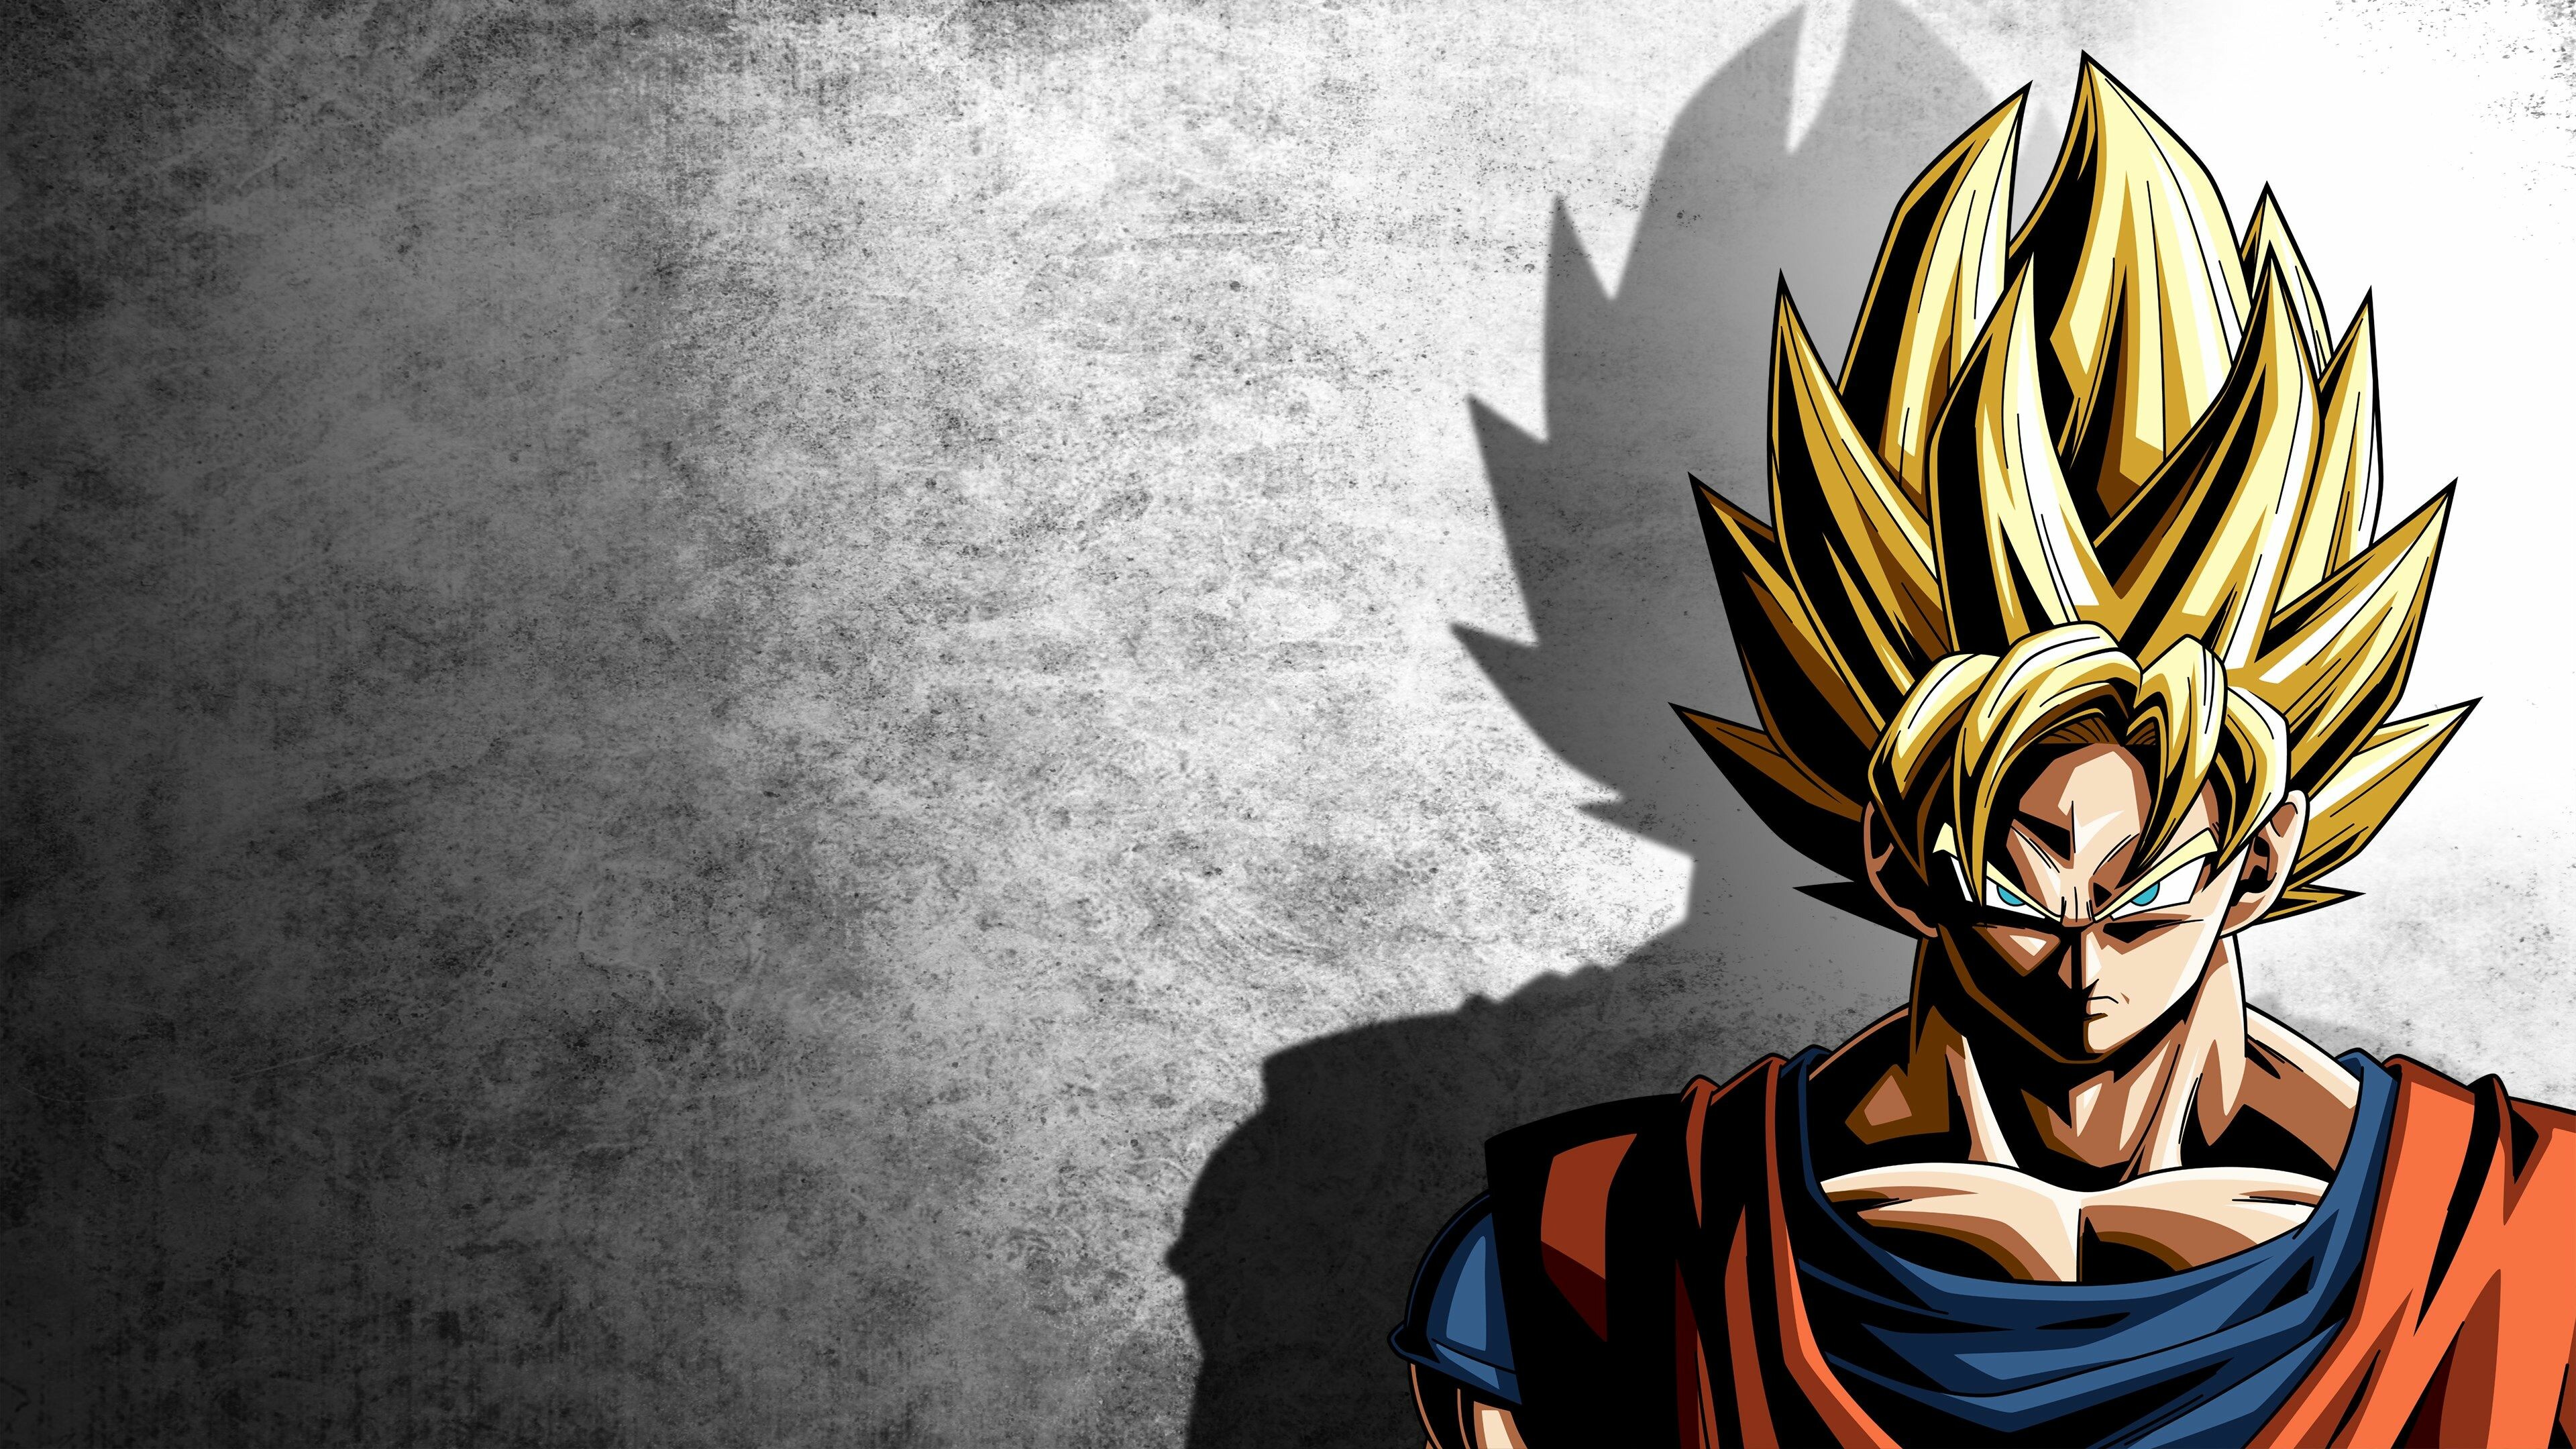 Dragon Ball Z: DBZ, The adventures of Goku, Manga. 3840x2160 4K Background.